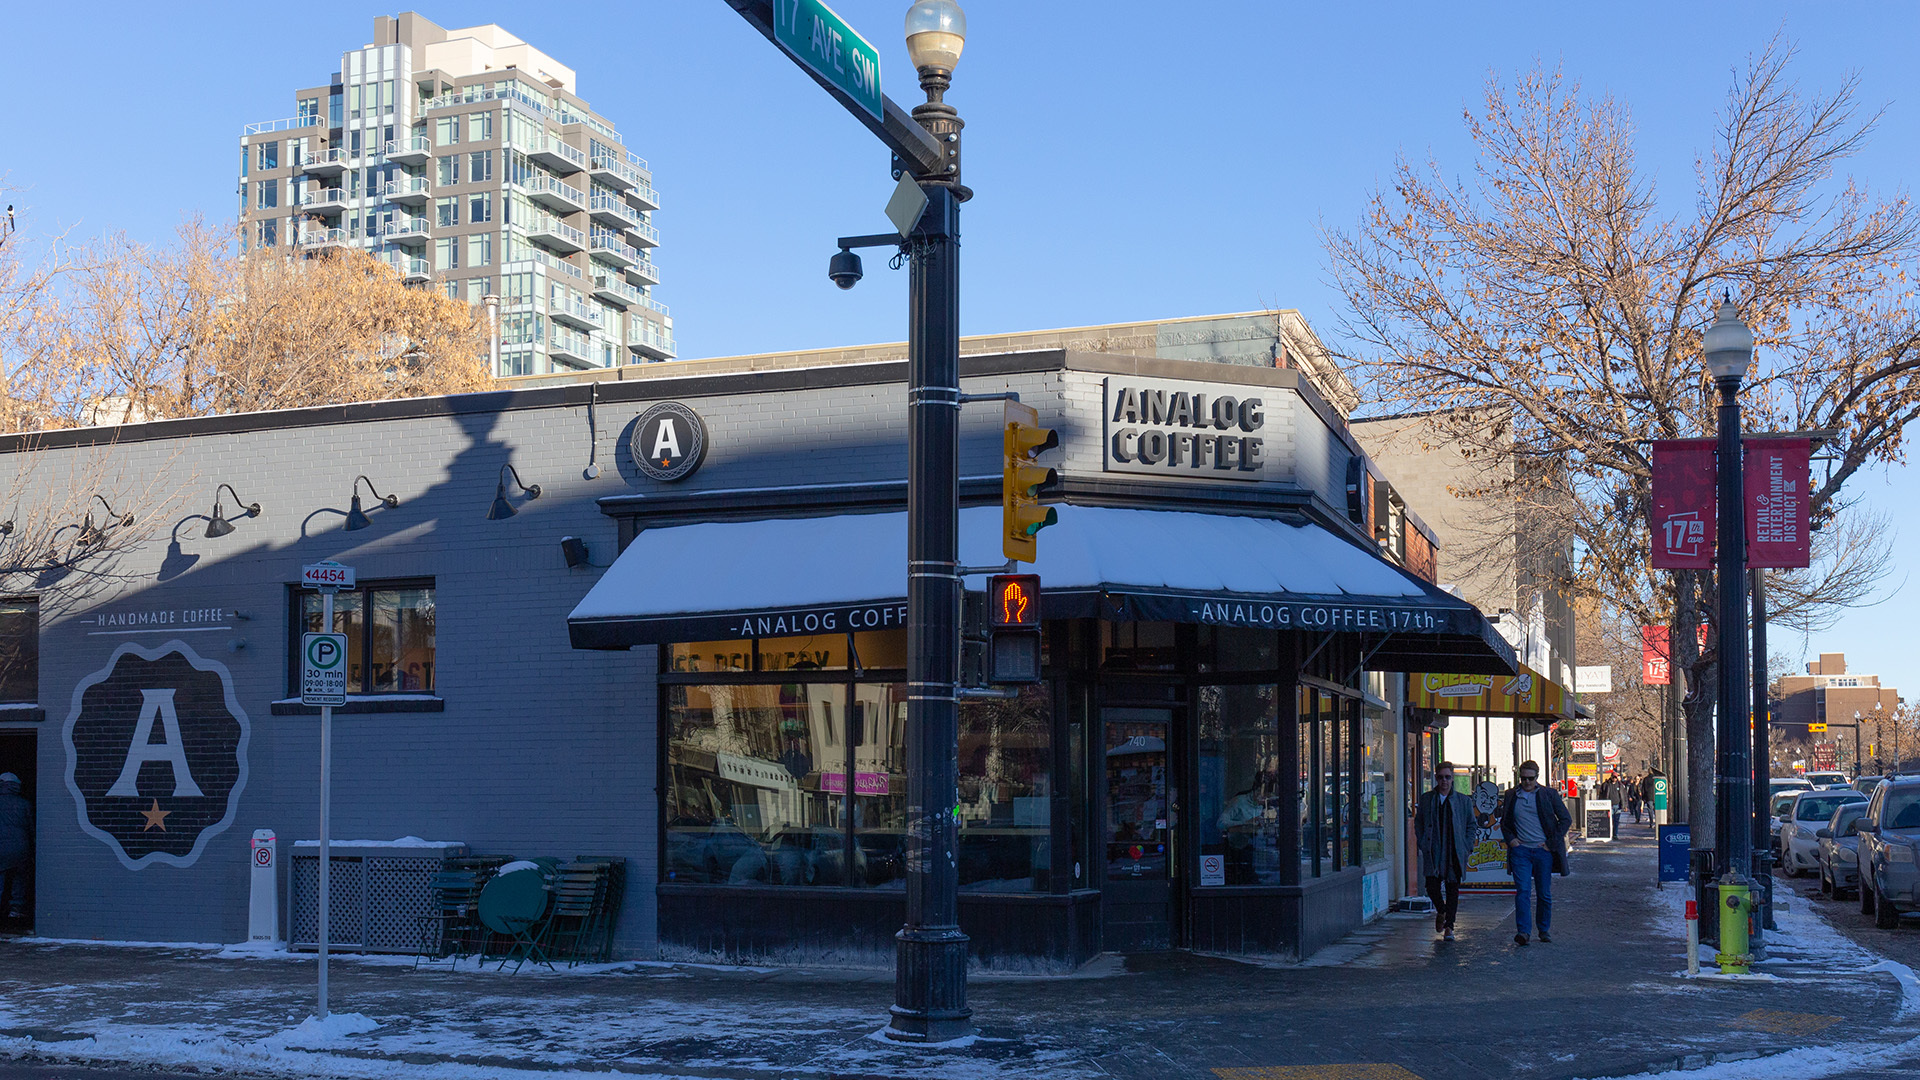 Top 3 Best Coffee Shops in Calgary Calgary Reviews